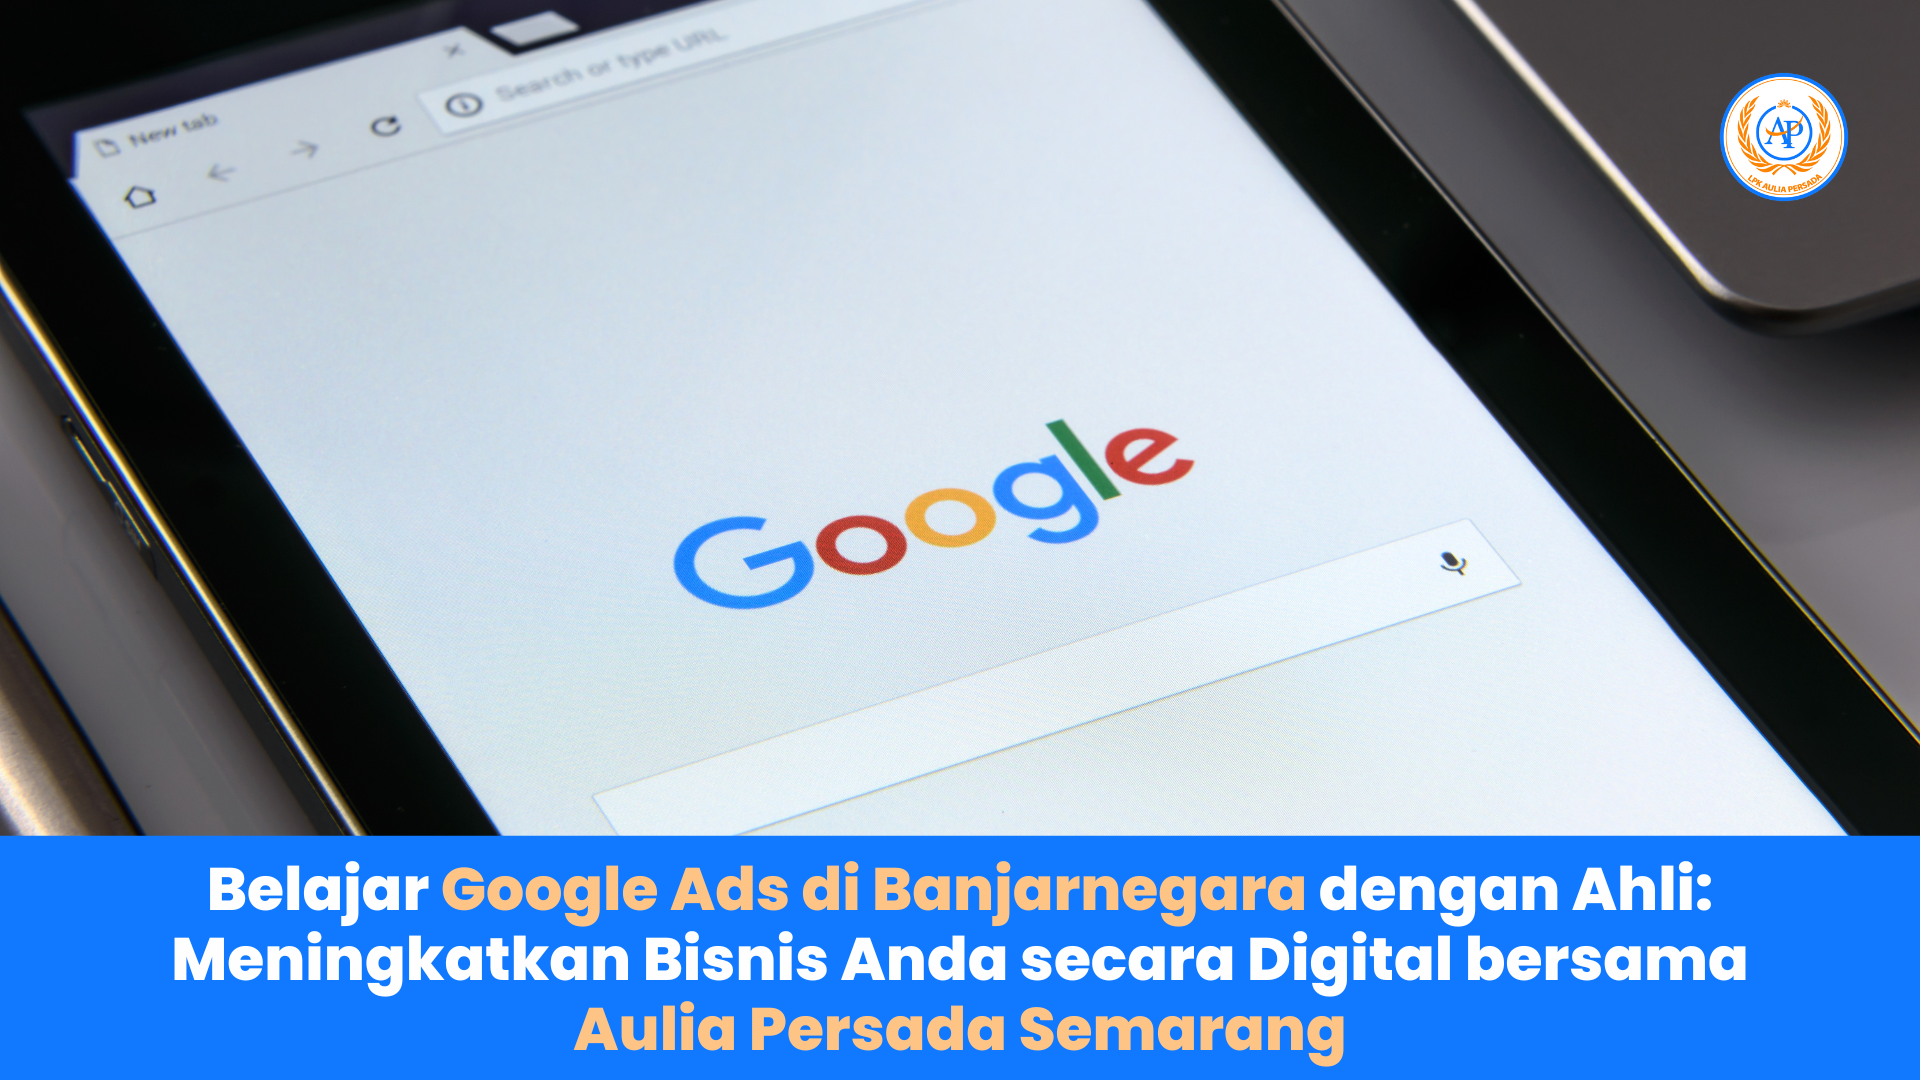 Belajar Google Ads di Banjarnegara dengan Ahli: Meningkatkan Bisnis Anda secara Digital bersama Aulia Persada Semarang